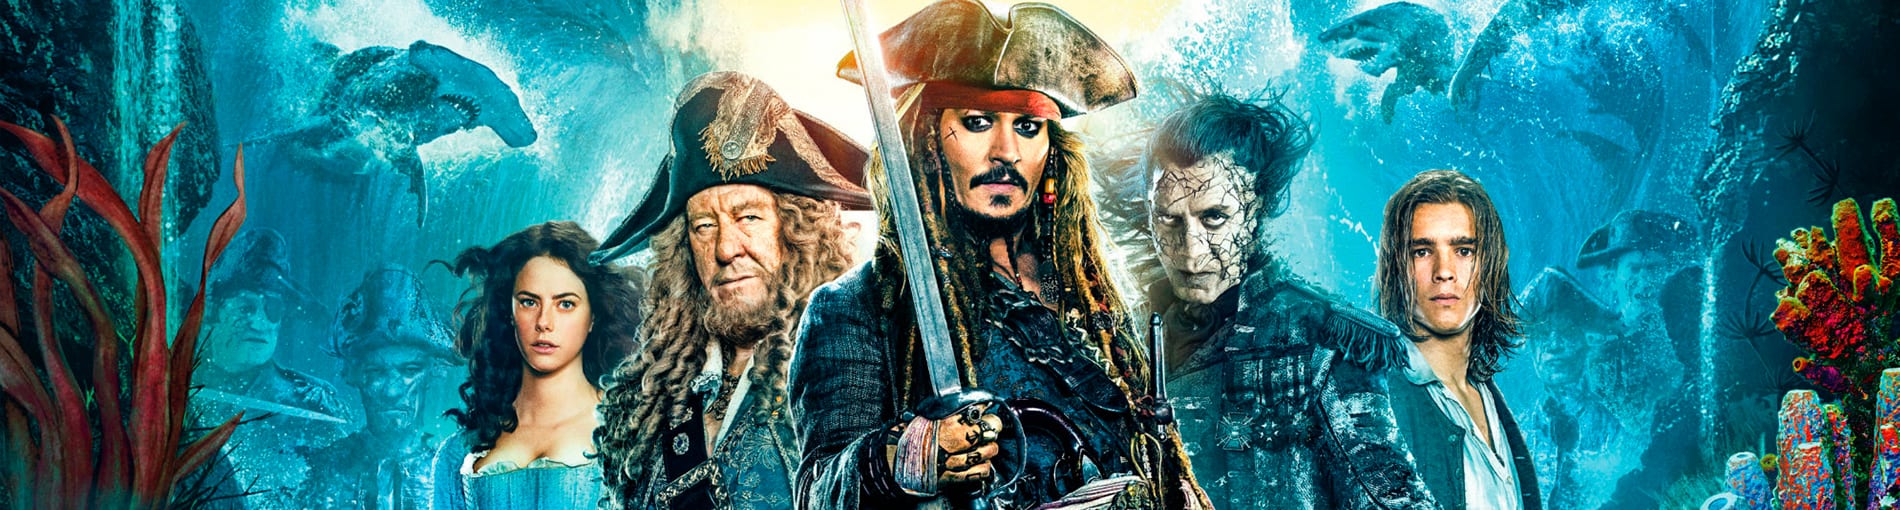 Crítica de cine: Piratas del Caribe: La Venganza de Salazar